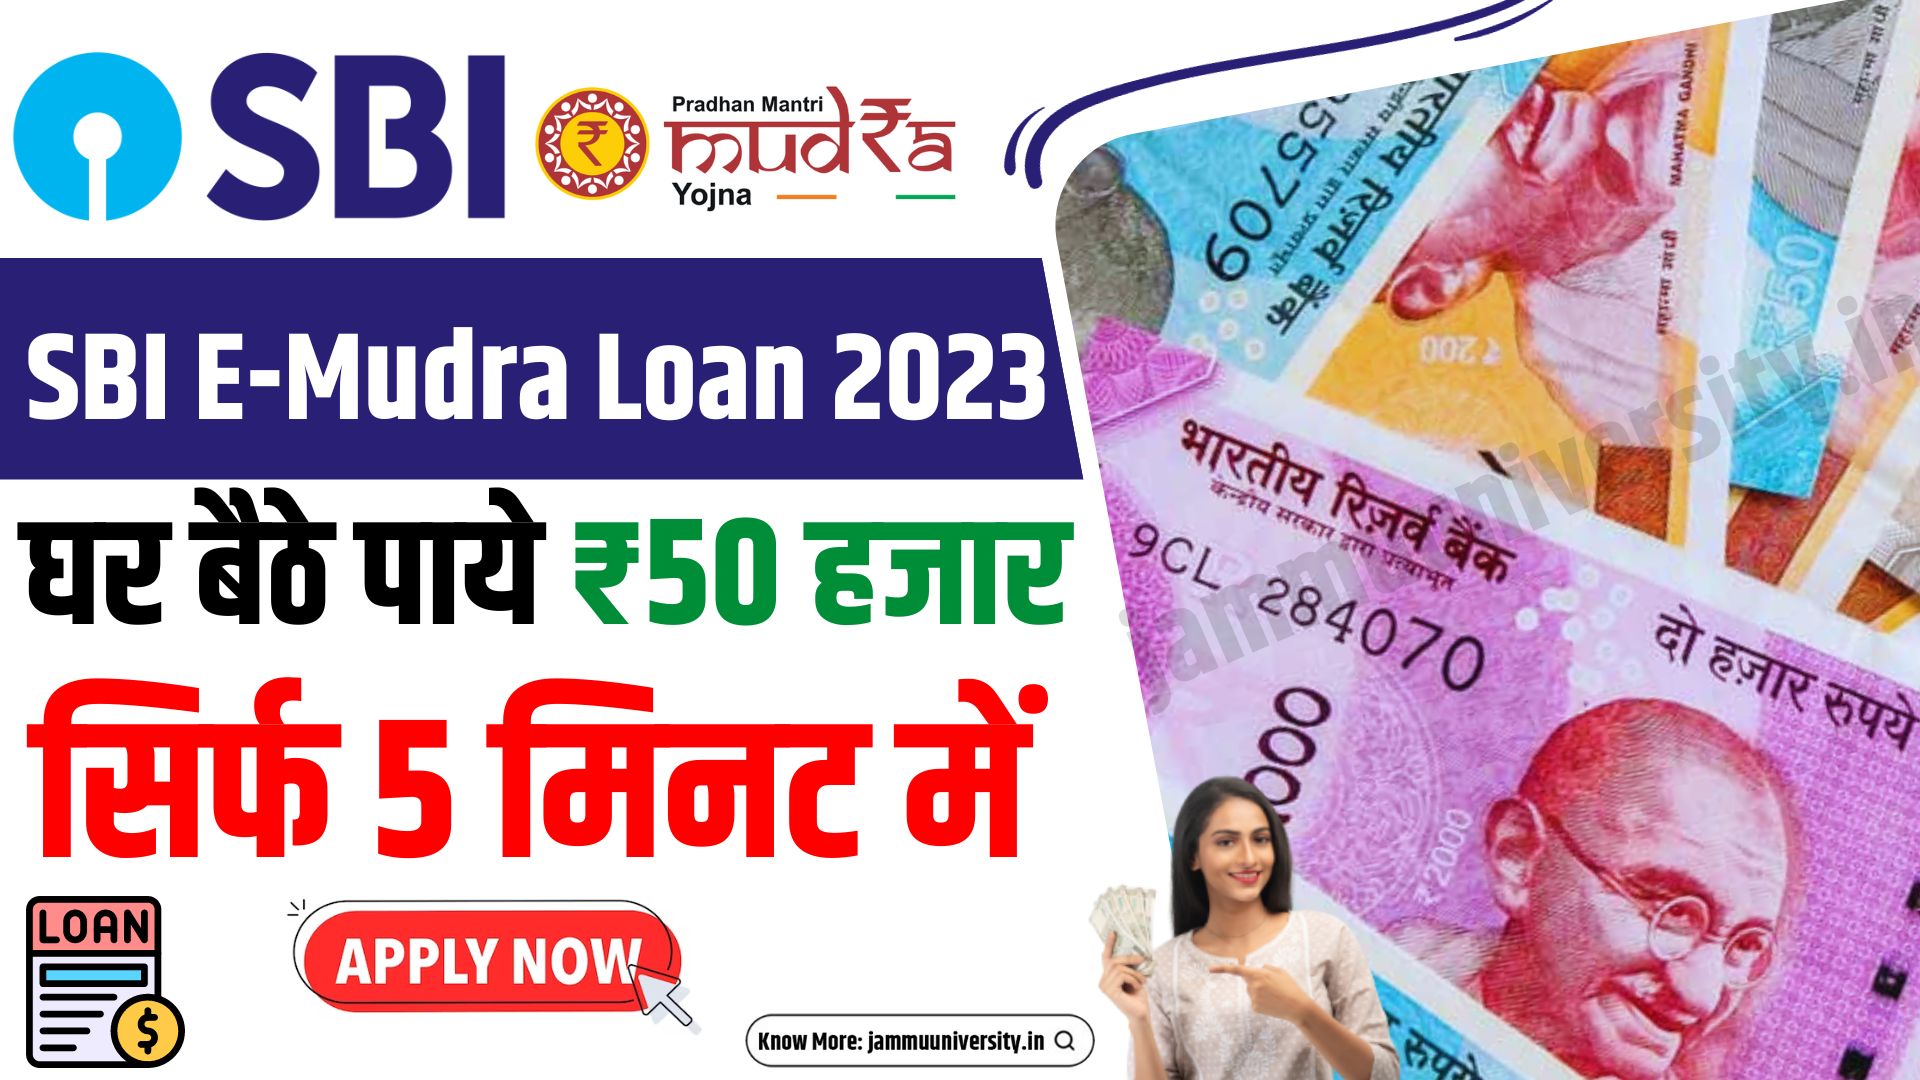 SBI E Mudra Loan 2023 Online